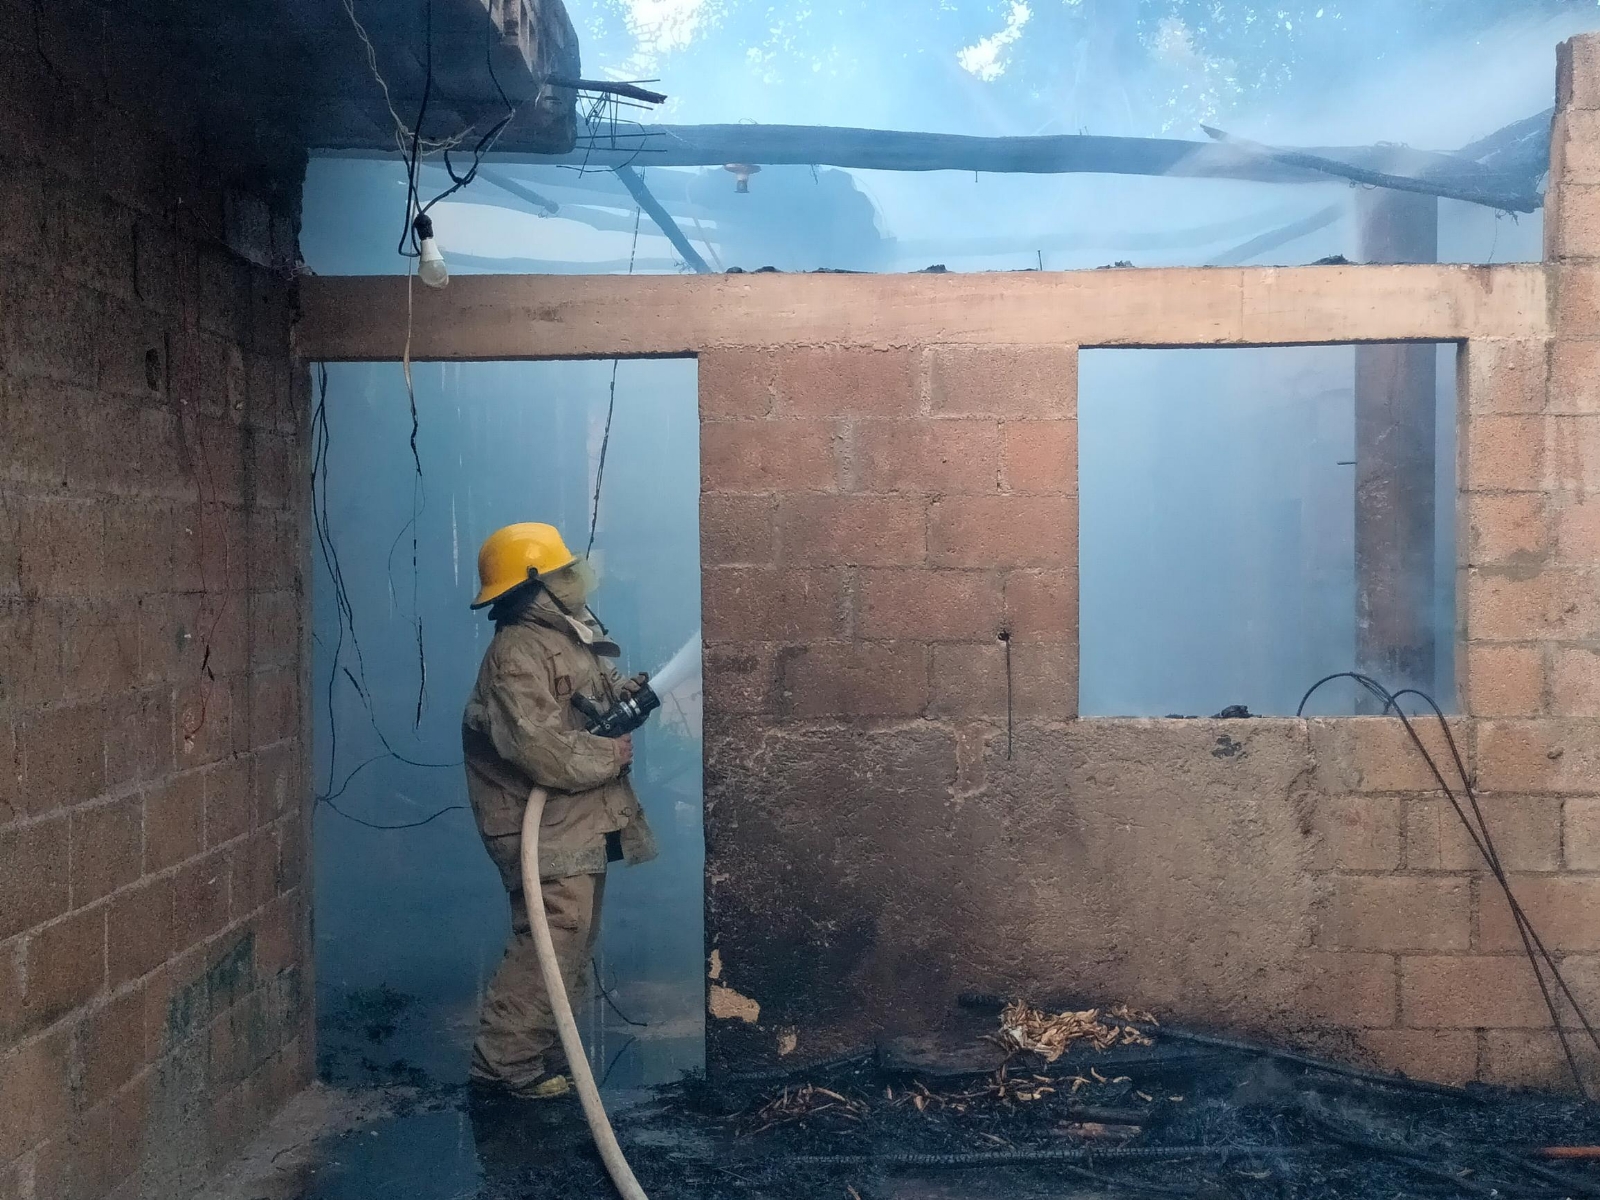 Incendio consume una casa en Peto; vecinos sofocan el fuego a manguerazos